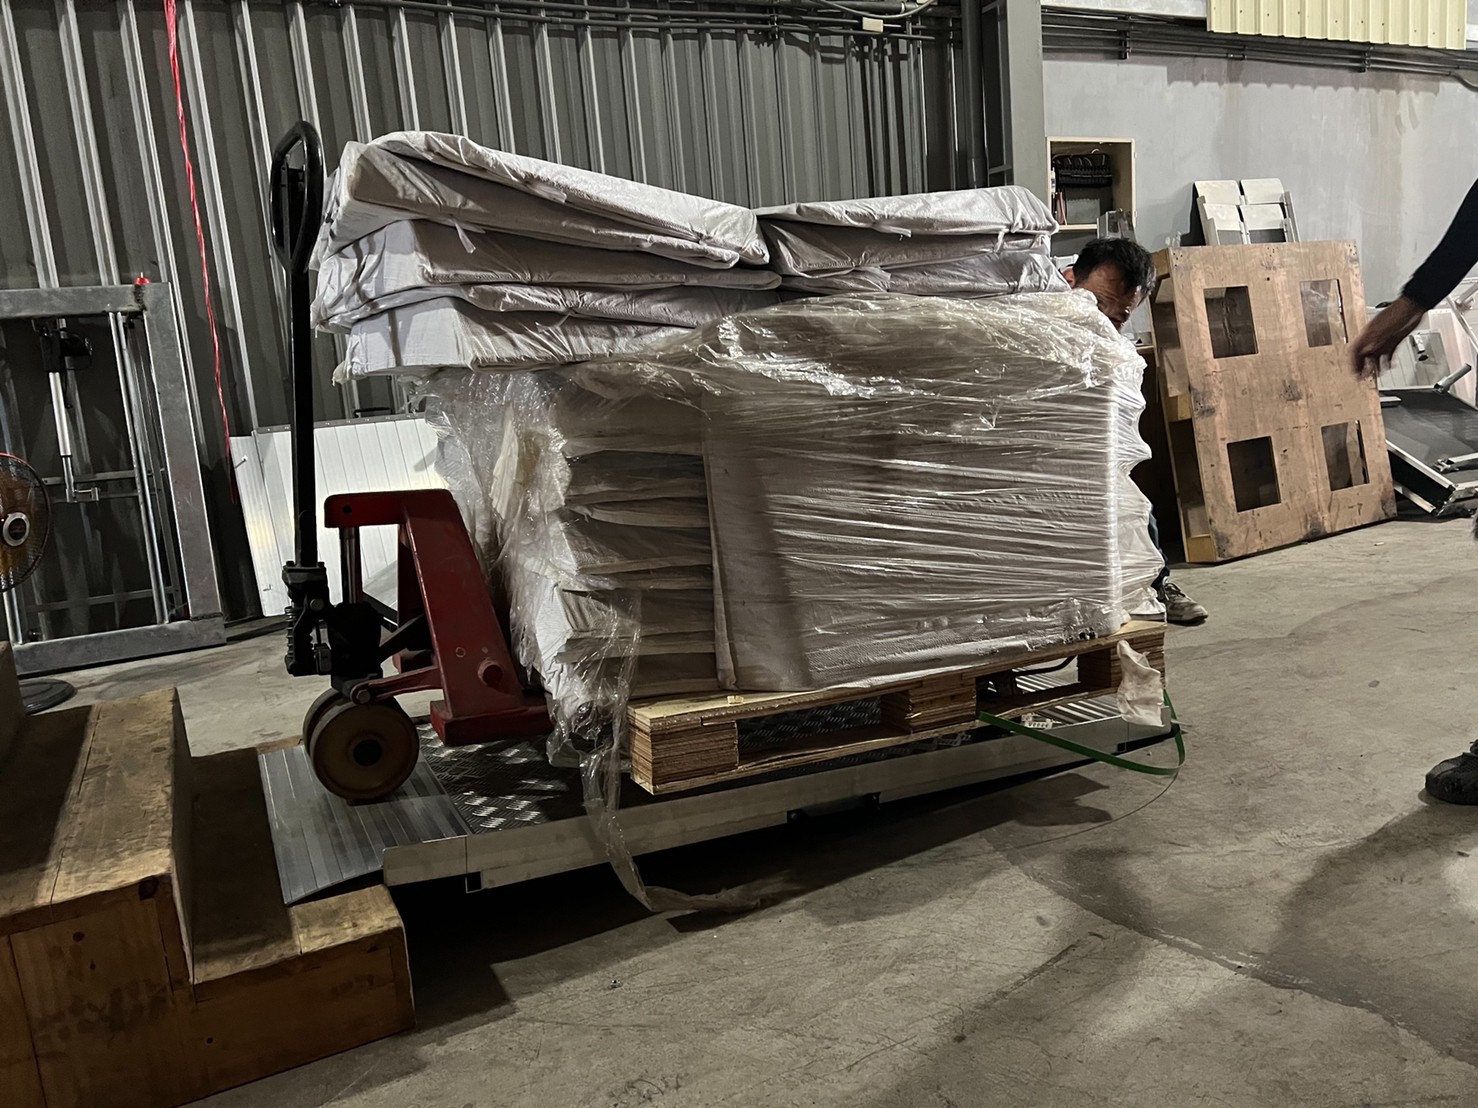 重物專用斜坡板實測棧板車載重800公斤